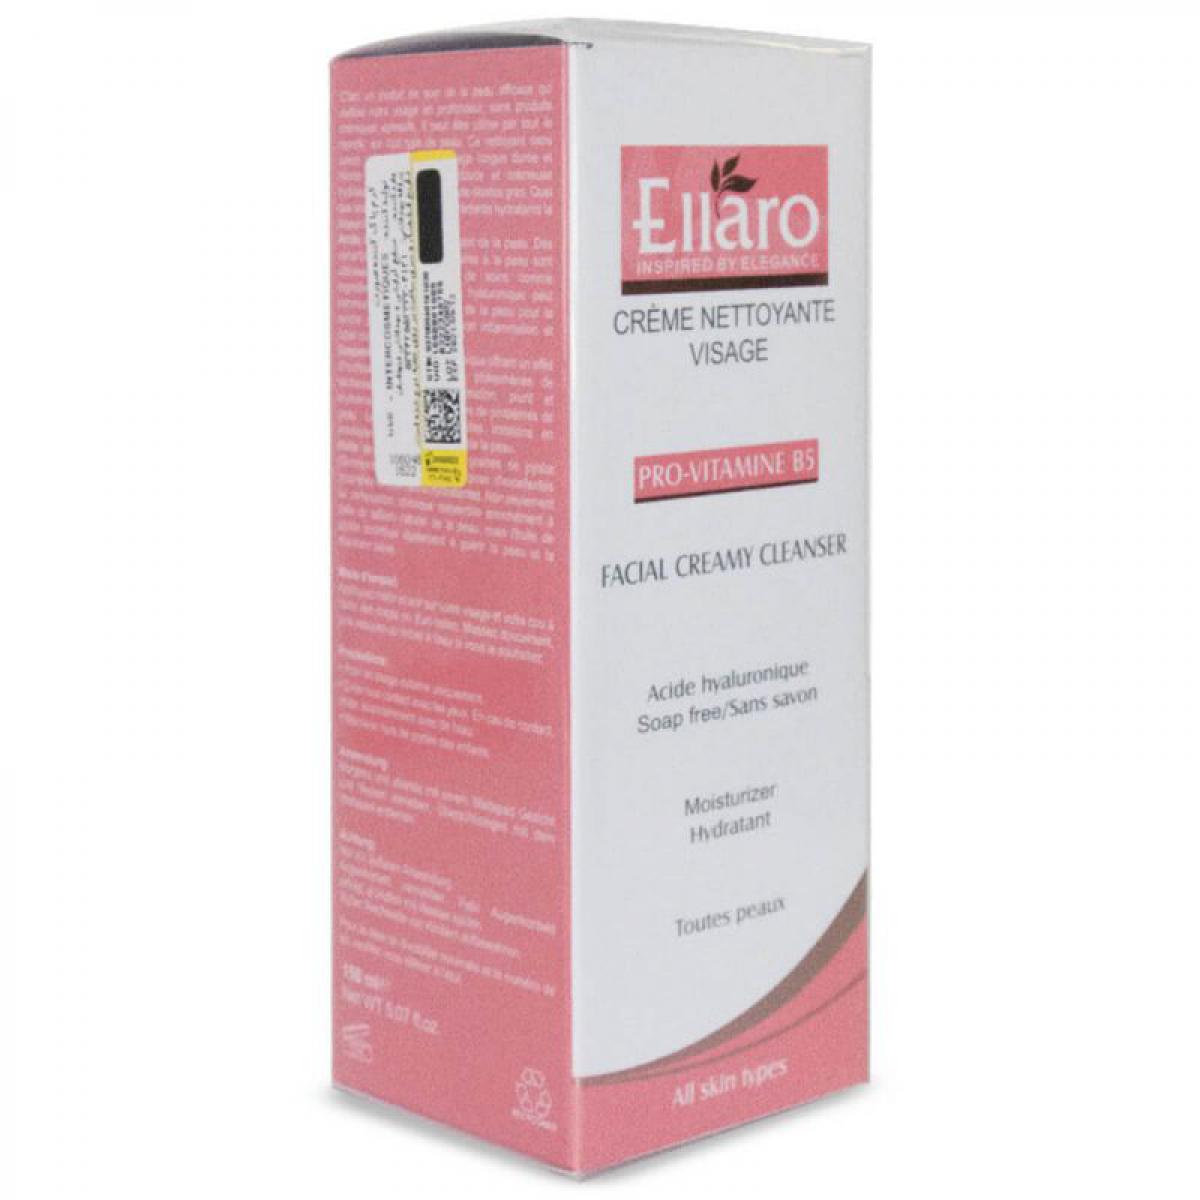 شوینده کرمی مناسب پوست های خشک 150میل - Ellaro Facial Creamy Cleanser 150ml